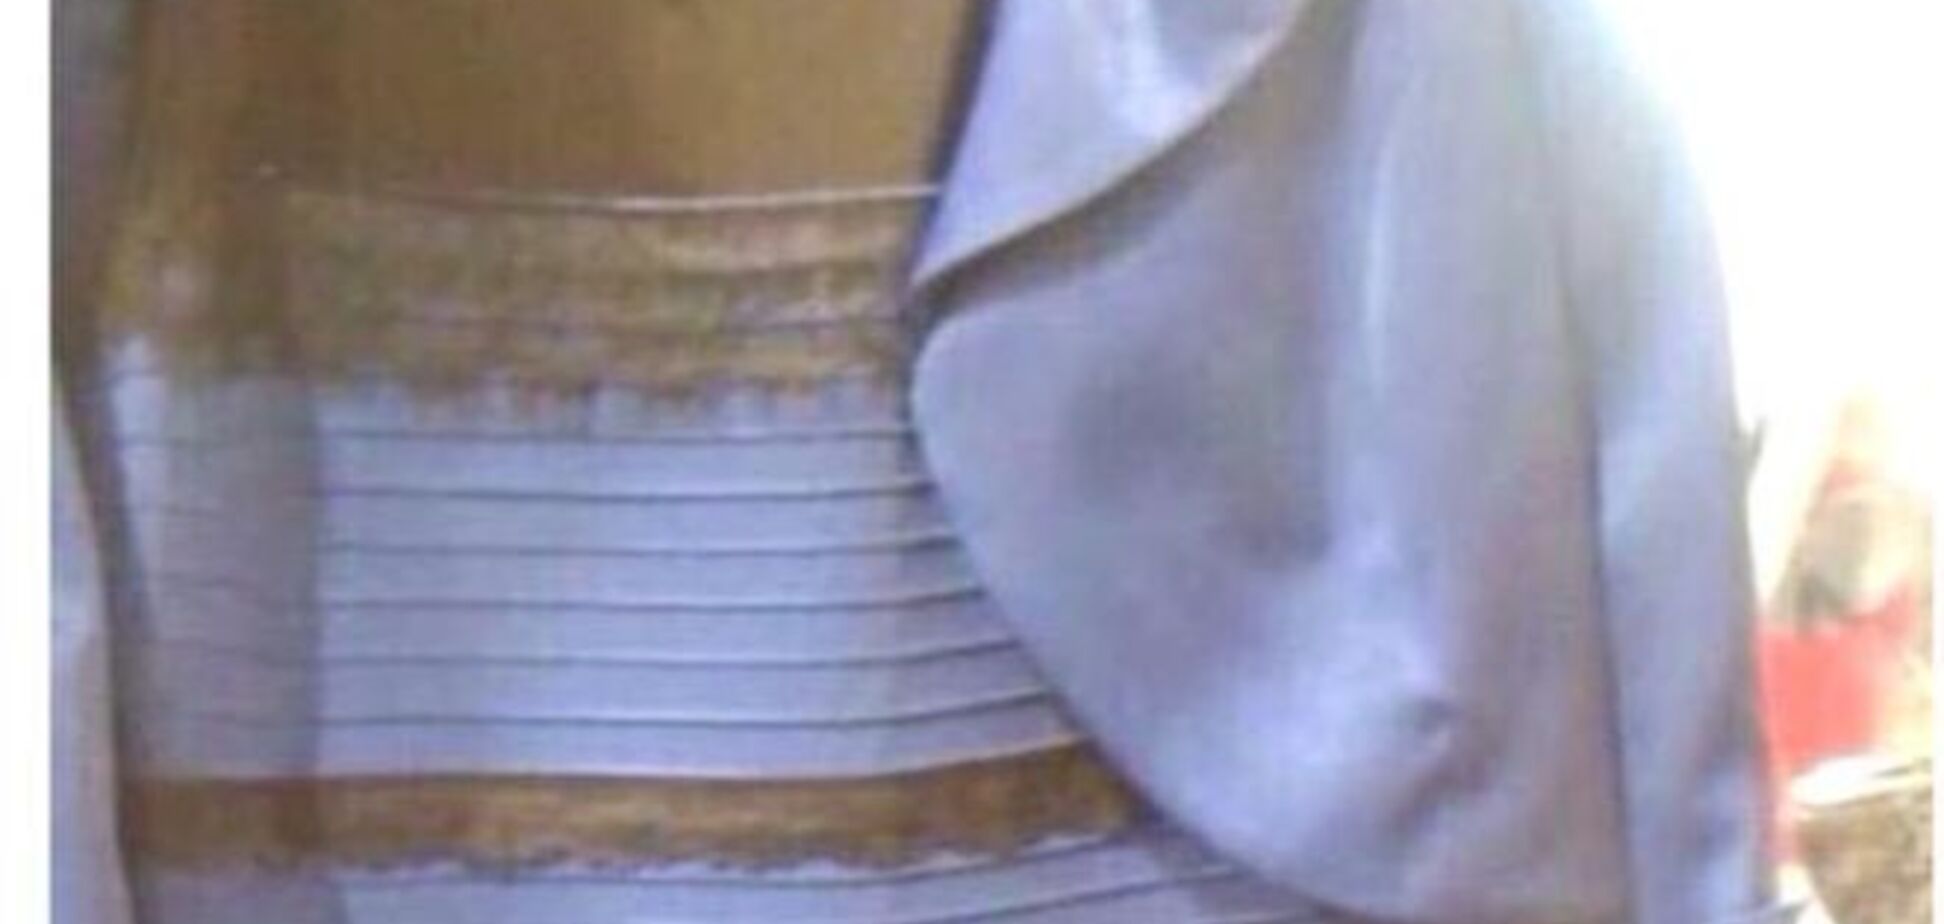 Платье, цвет которого люди видят по-разному, взорвало мозг интернет-пользователям по всему миру